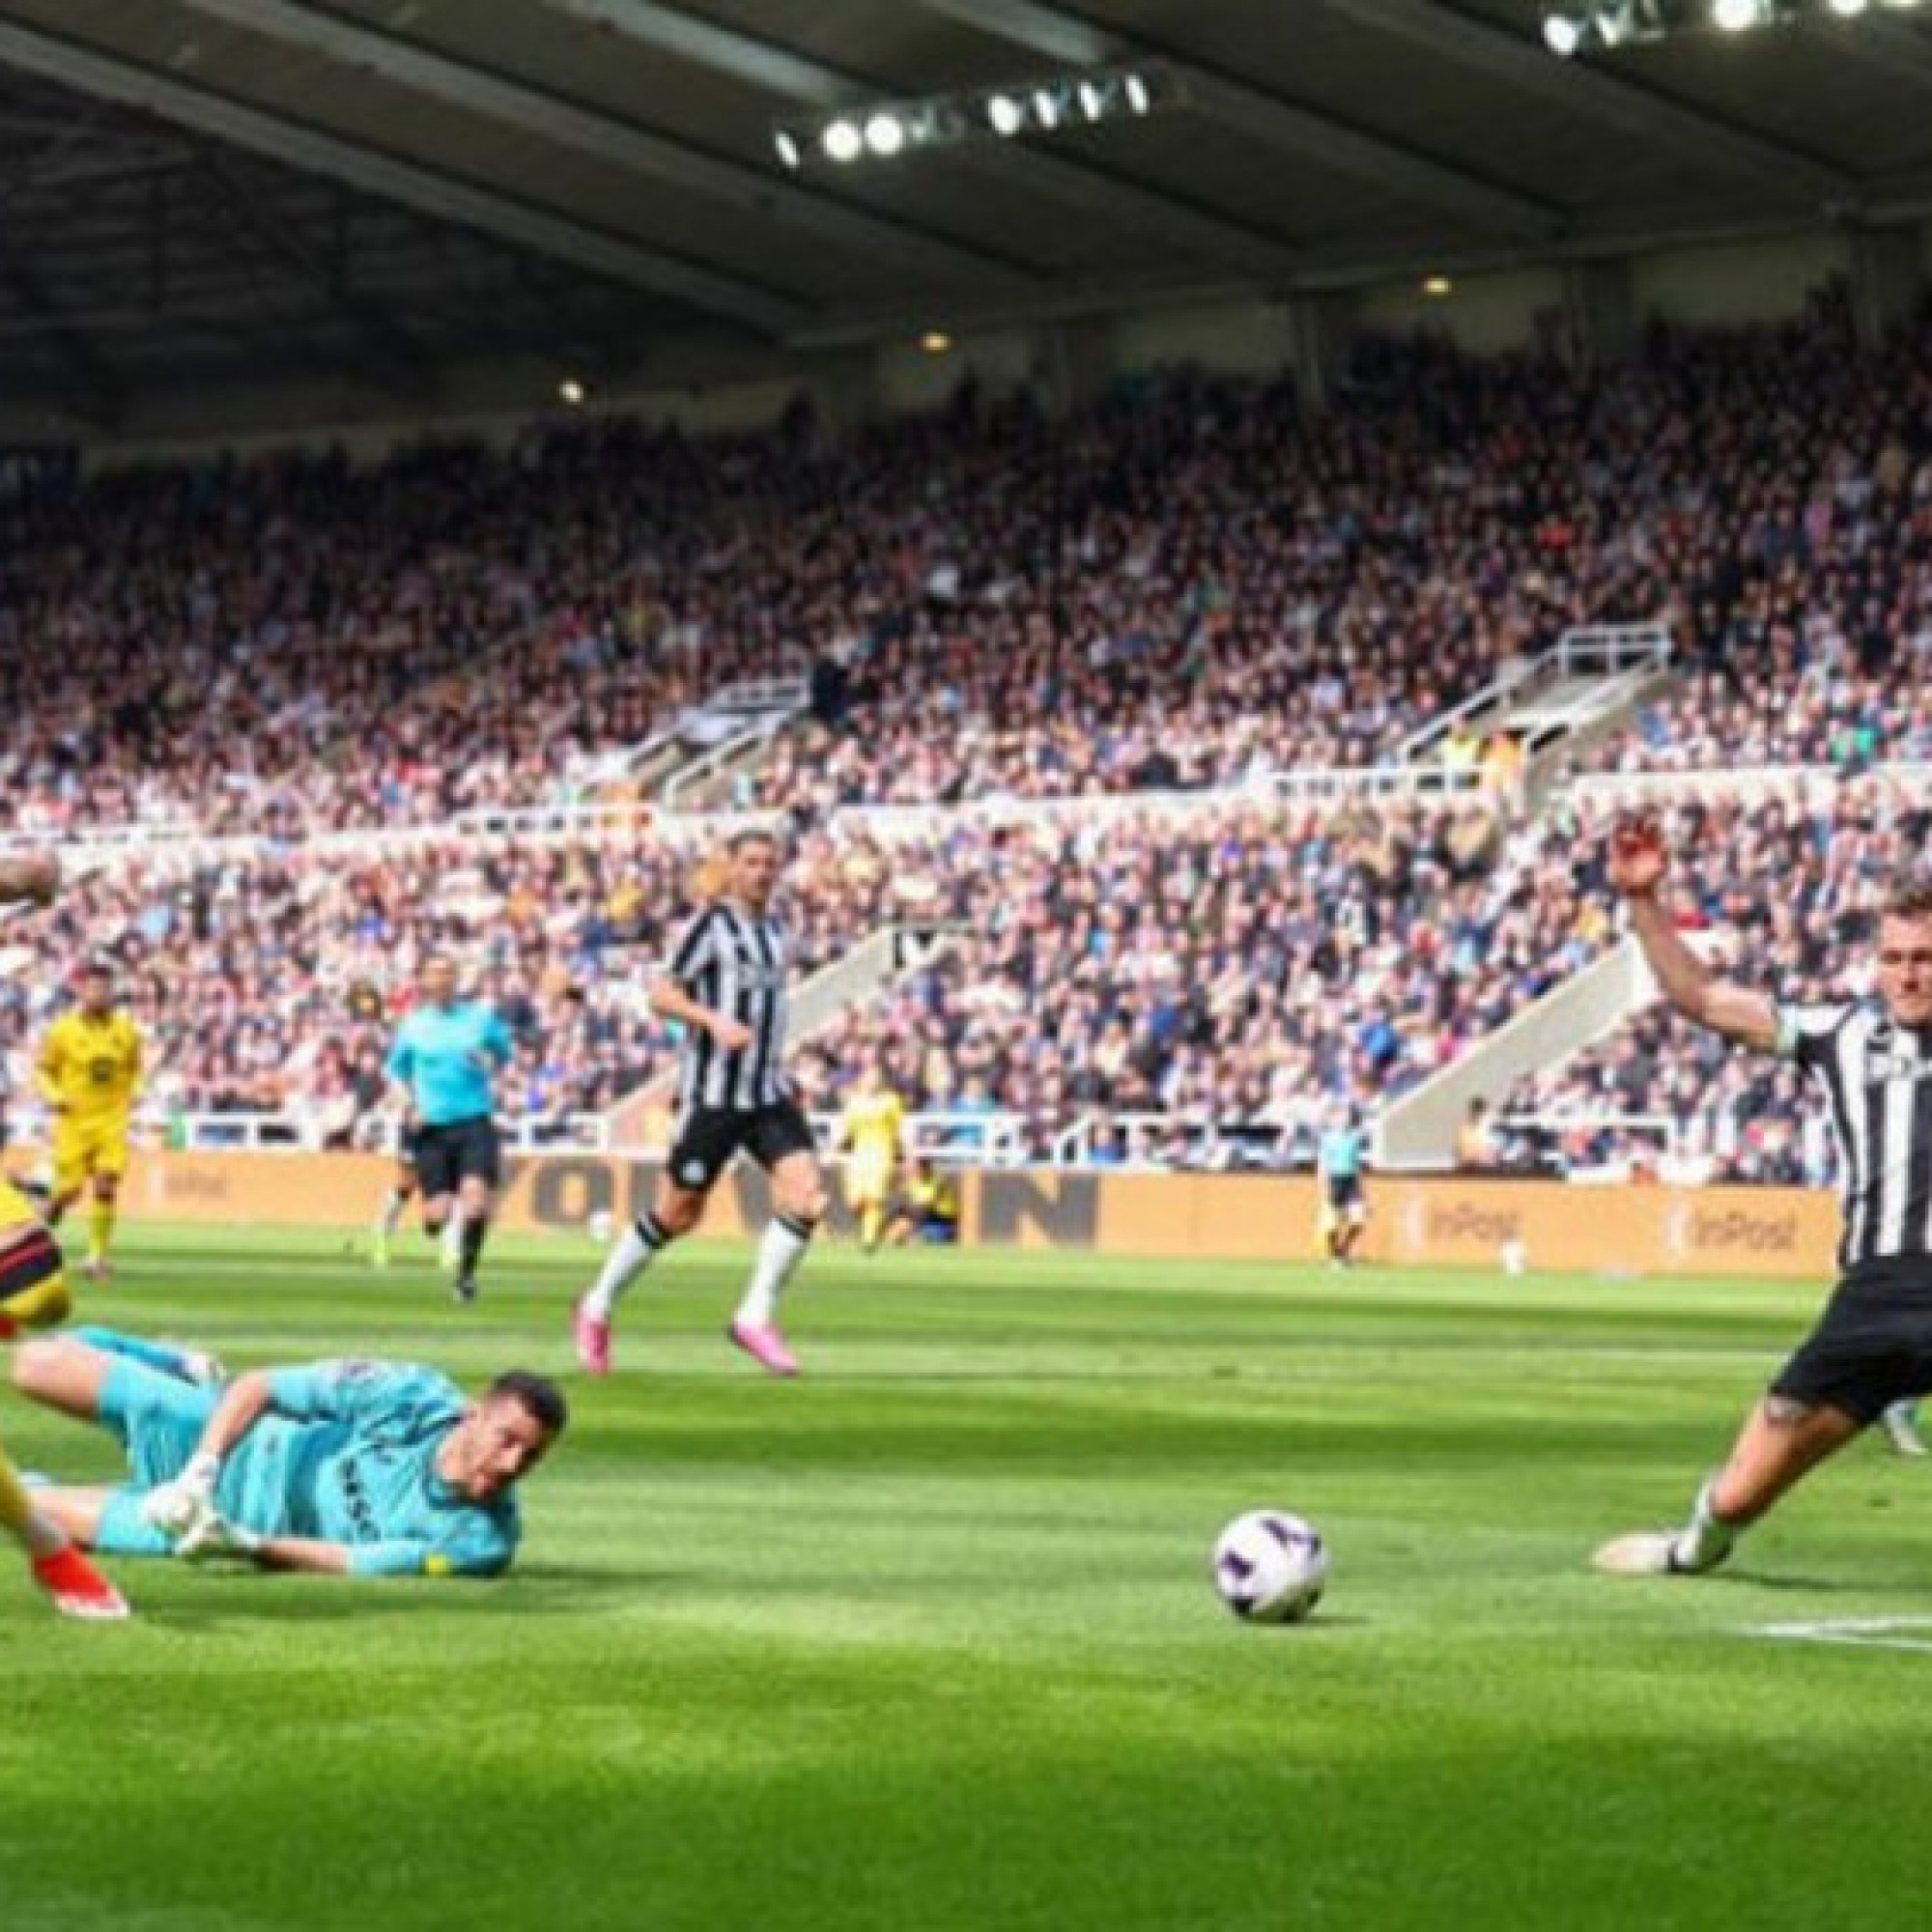  - Video bóng đá Newcastle - Sheffield United: "Mưa" bàn thắng hiệp 2, đội đầu tiên xuống hạng (Ngoại hạng Anh)